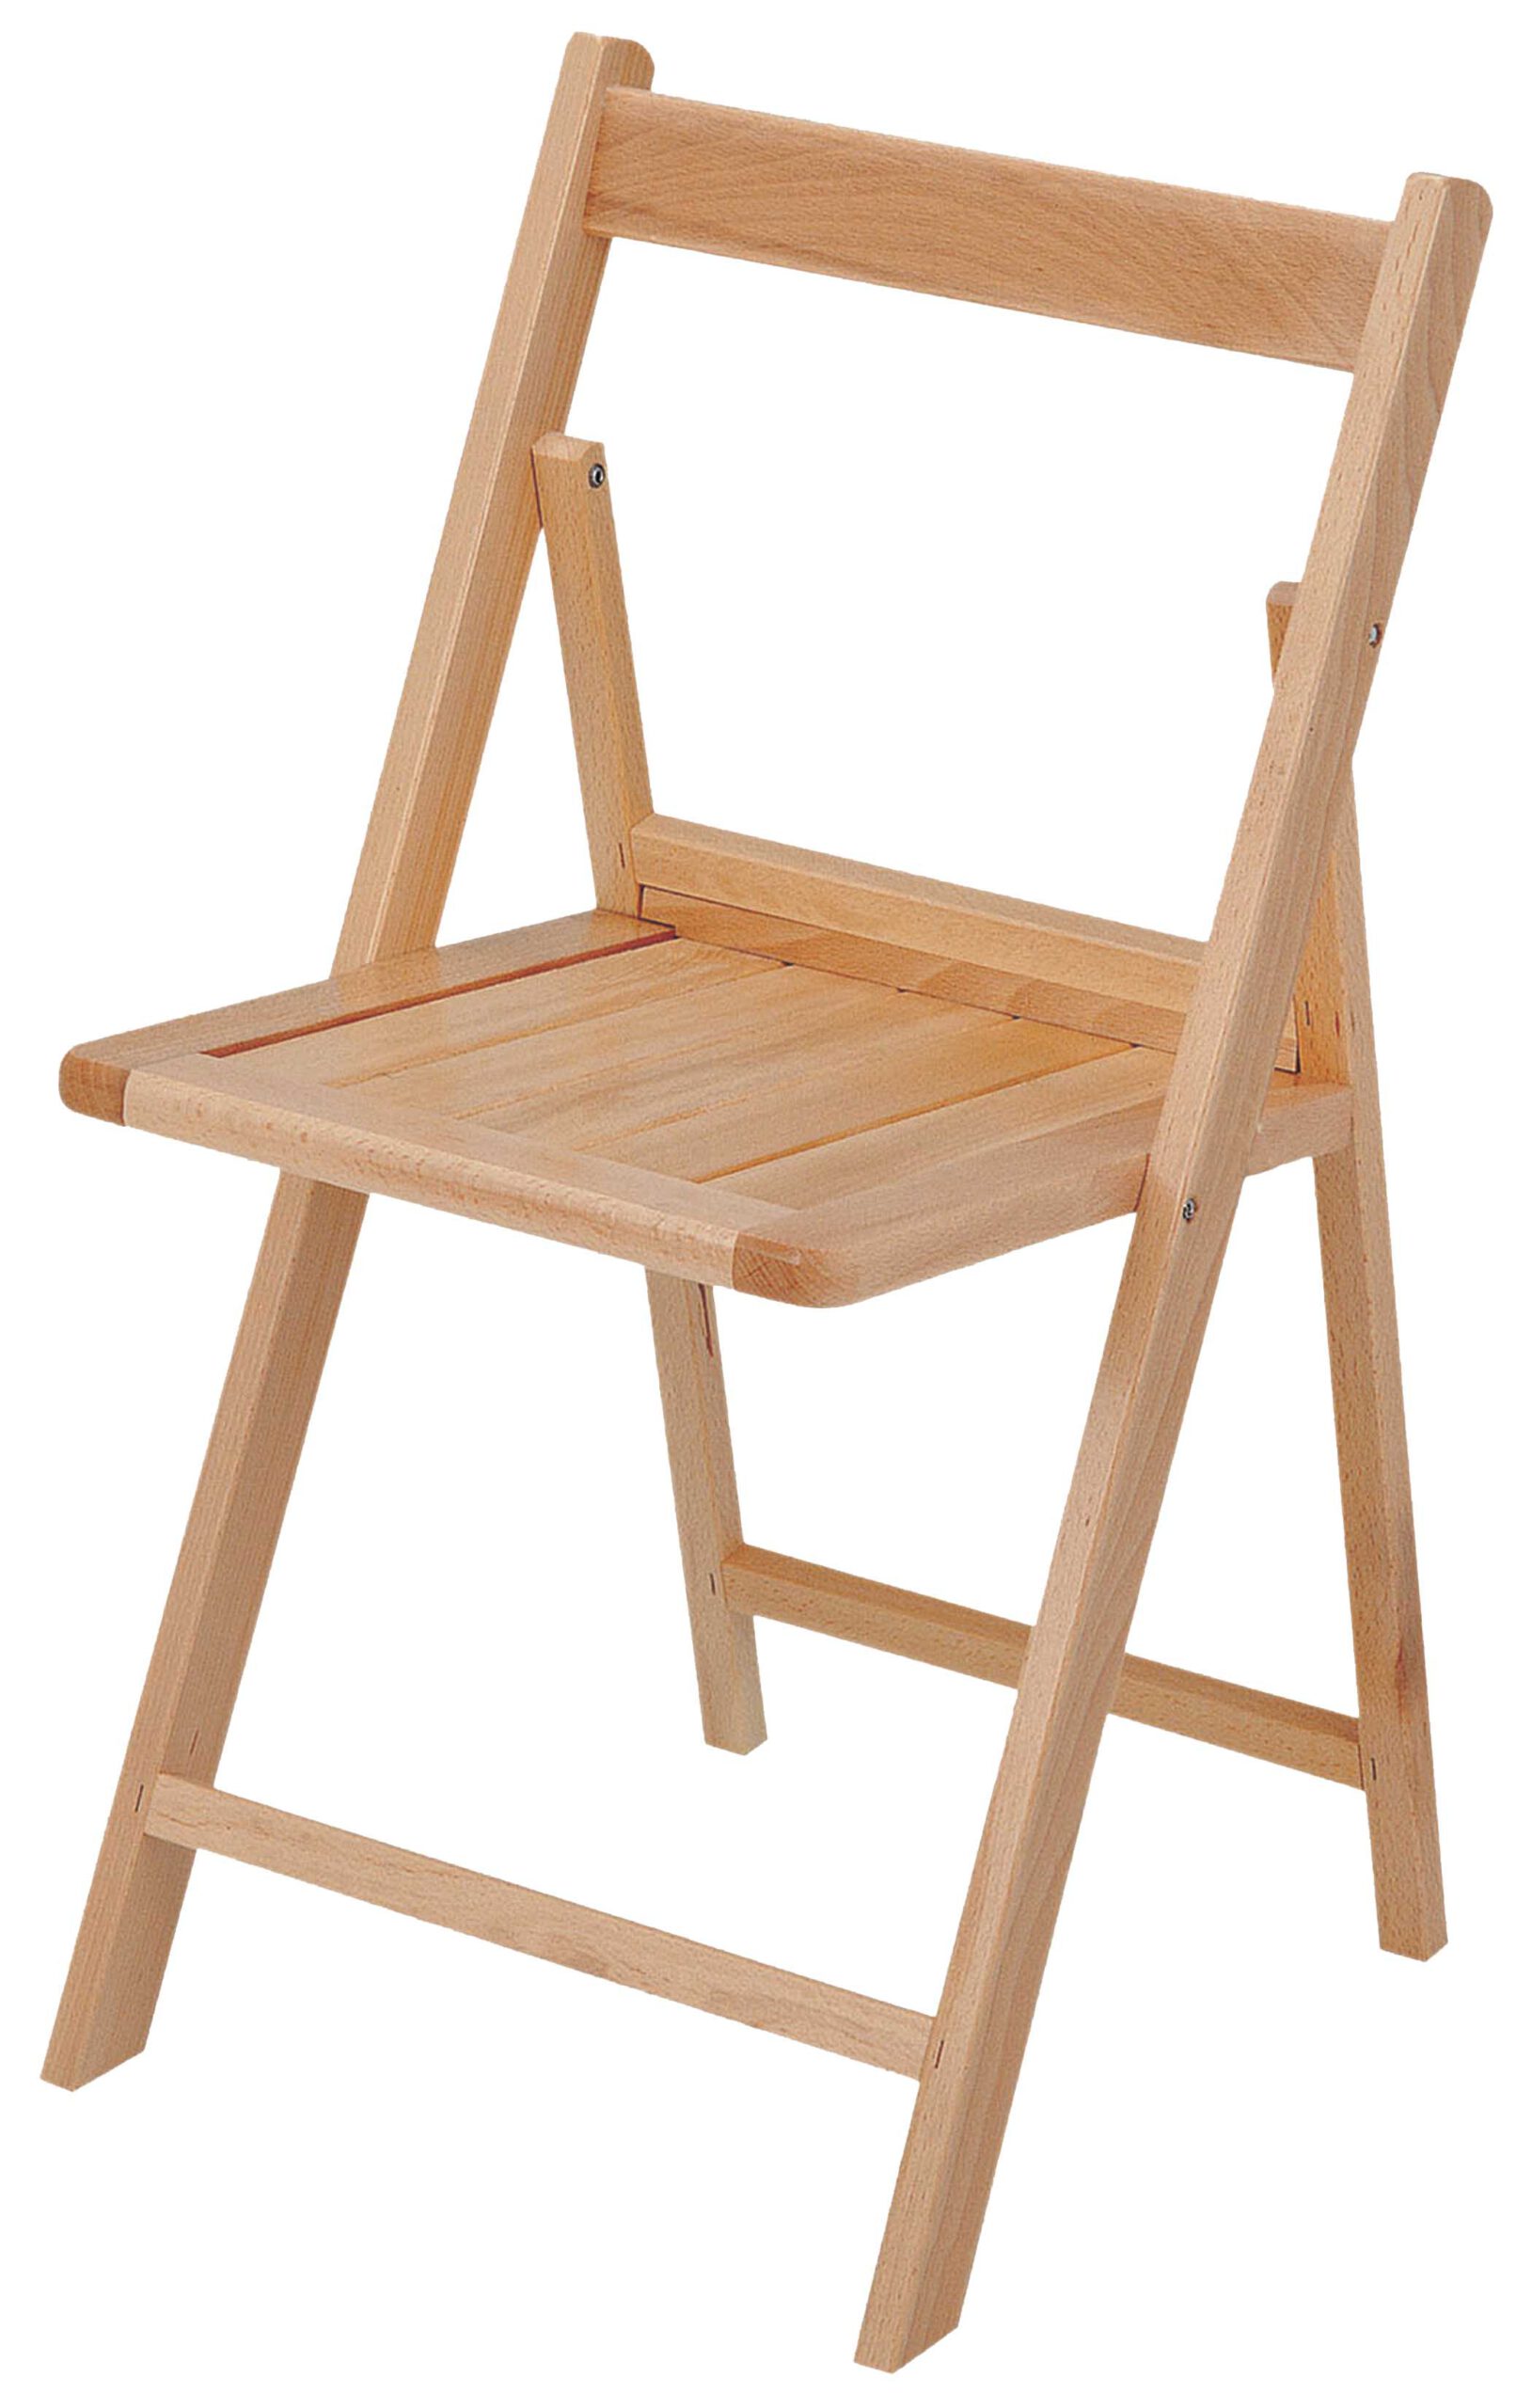 Mesa-plegable-madera-patas-abatibles-banquetes-200x80